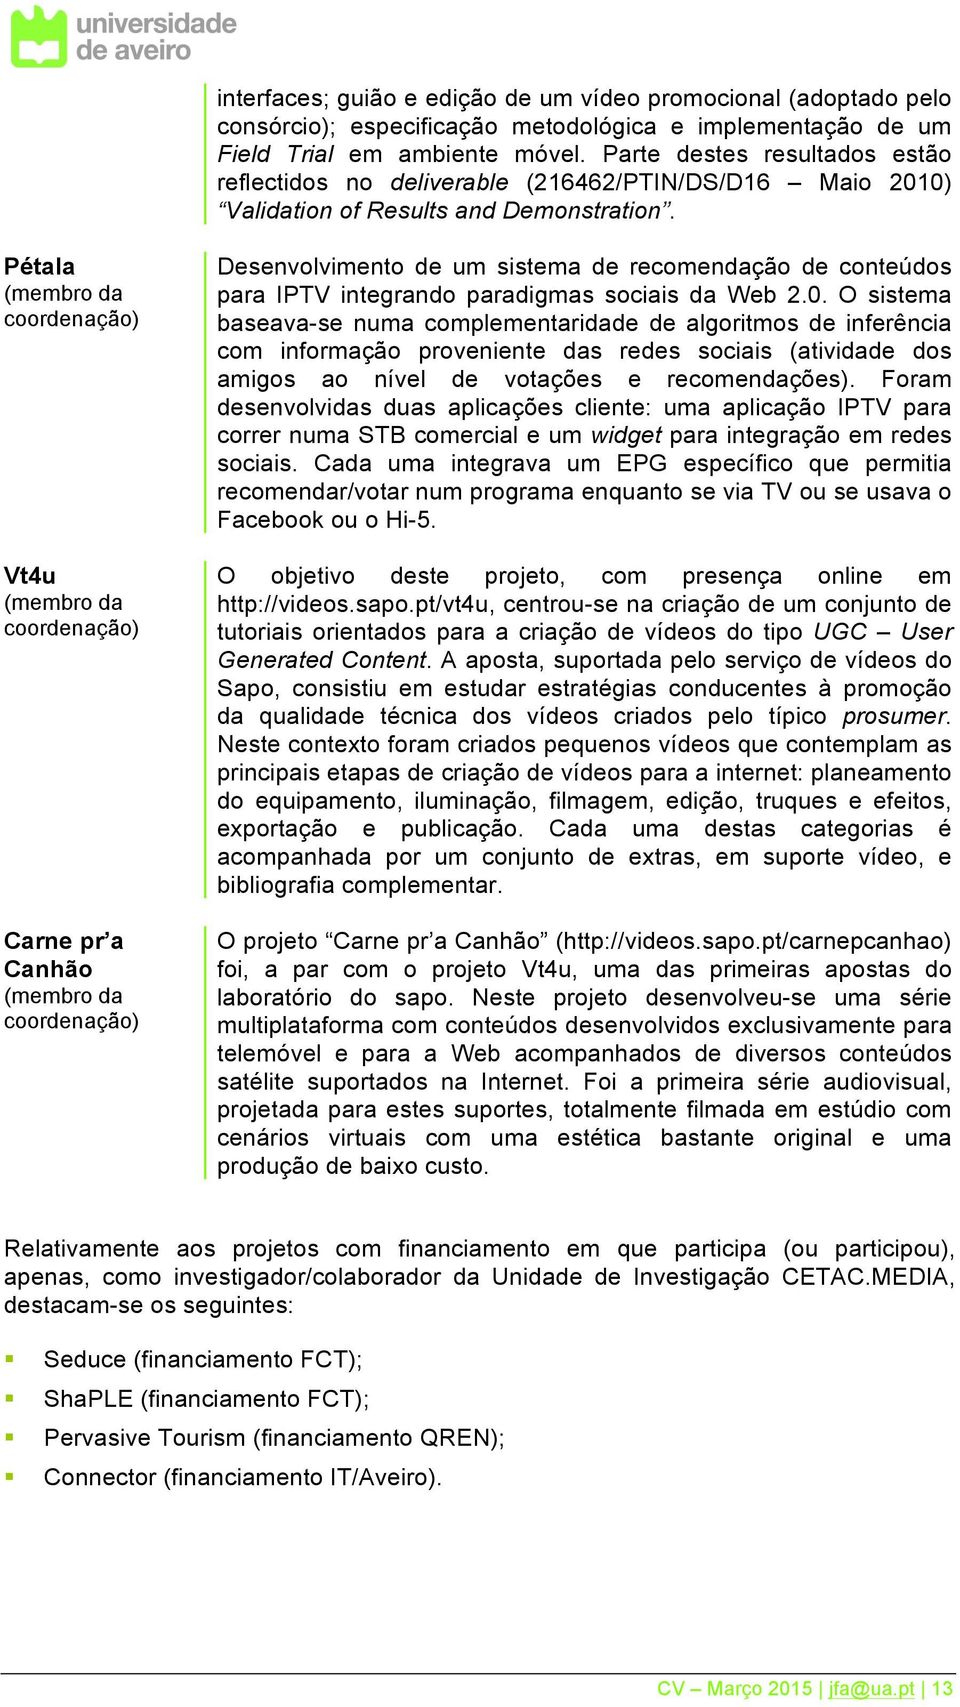 Pétala (membro da coordenação) Vt4u (membro da coordenação) Carne pr a Canhão (membro da coordenação) Desenvolvimento de um sistema de recomendação de conteúdos para IPTV integrando paradigmas